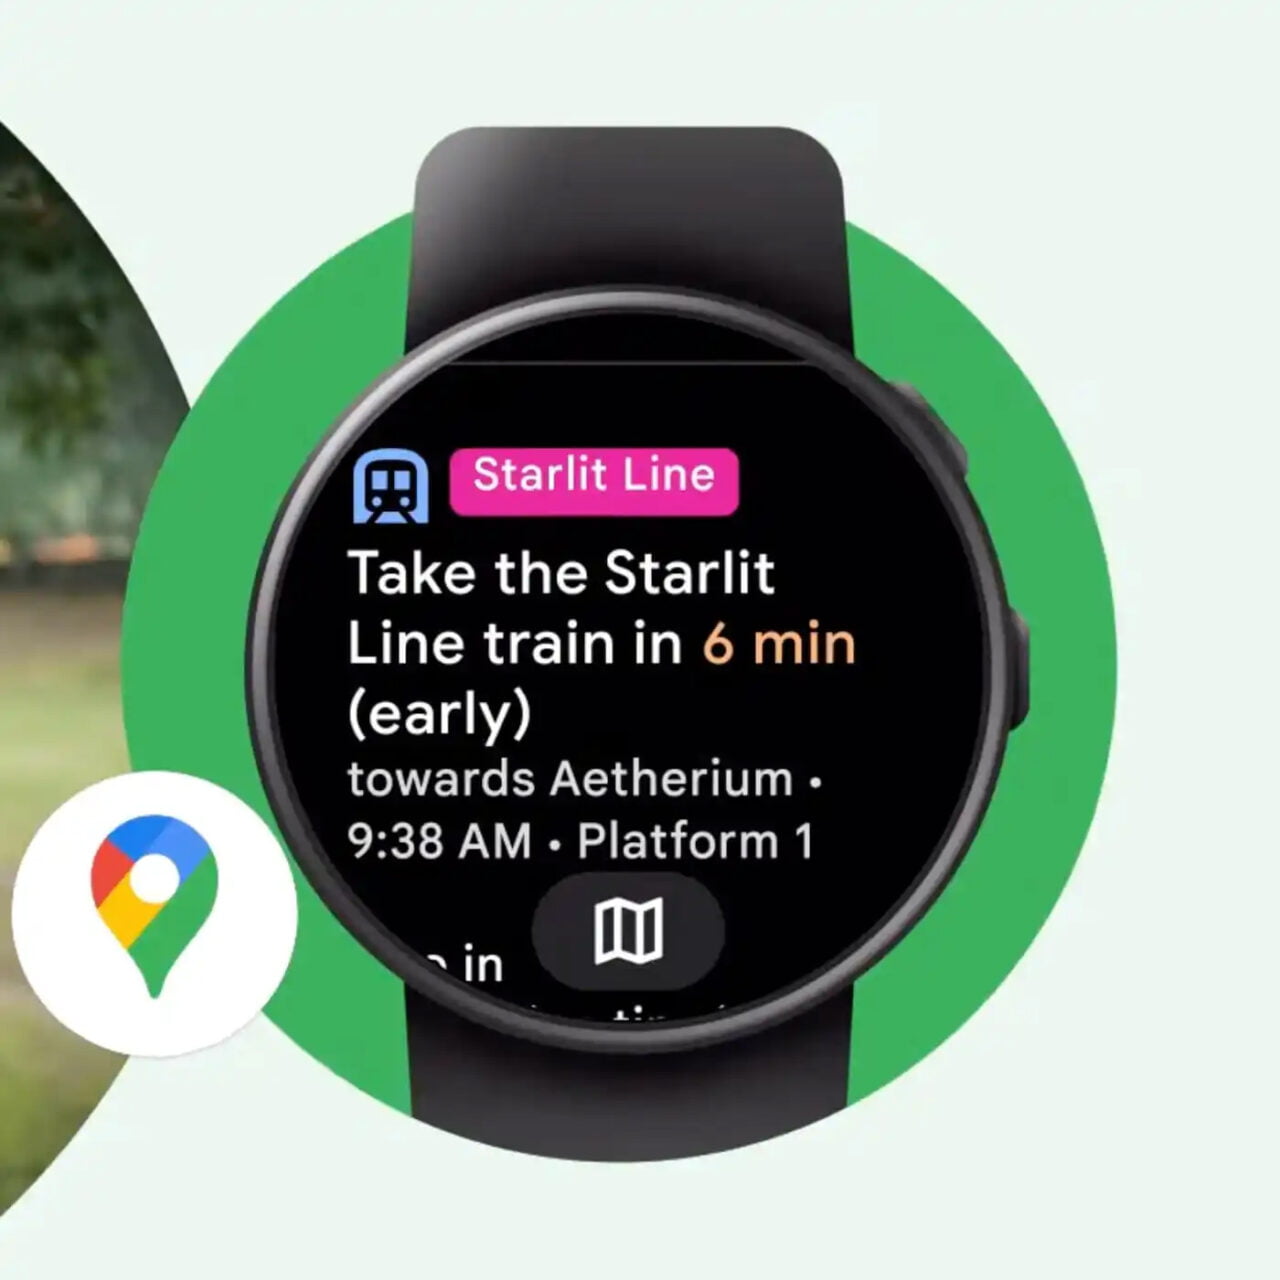 Czarny smartwatch z informacją o nadchodzącym pociągu Starlit Line na platformie 1 o 9:38, który przyjedzie za 6 minut, na tle zielono-czarnego graficznego tła z ikoną Map Google w dolnej części obrazu.